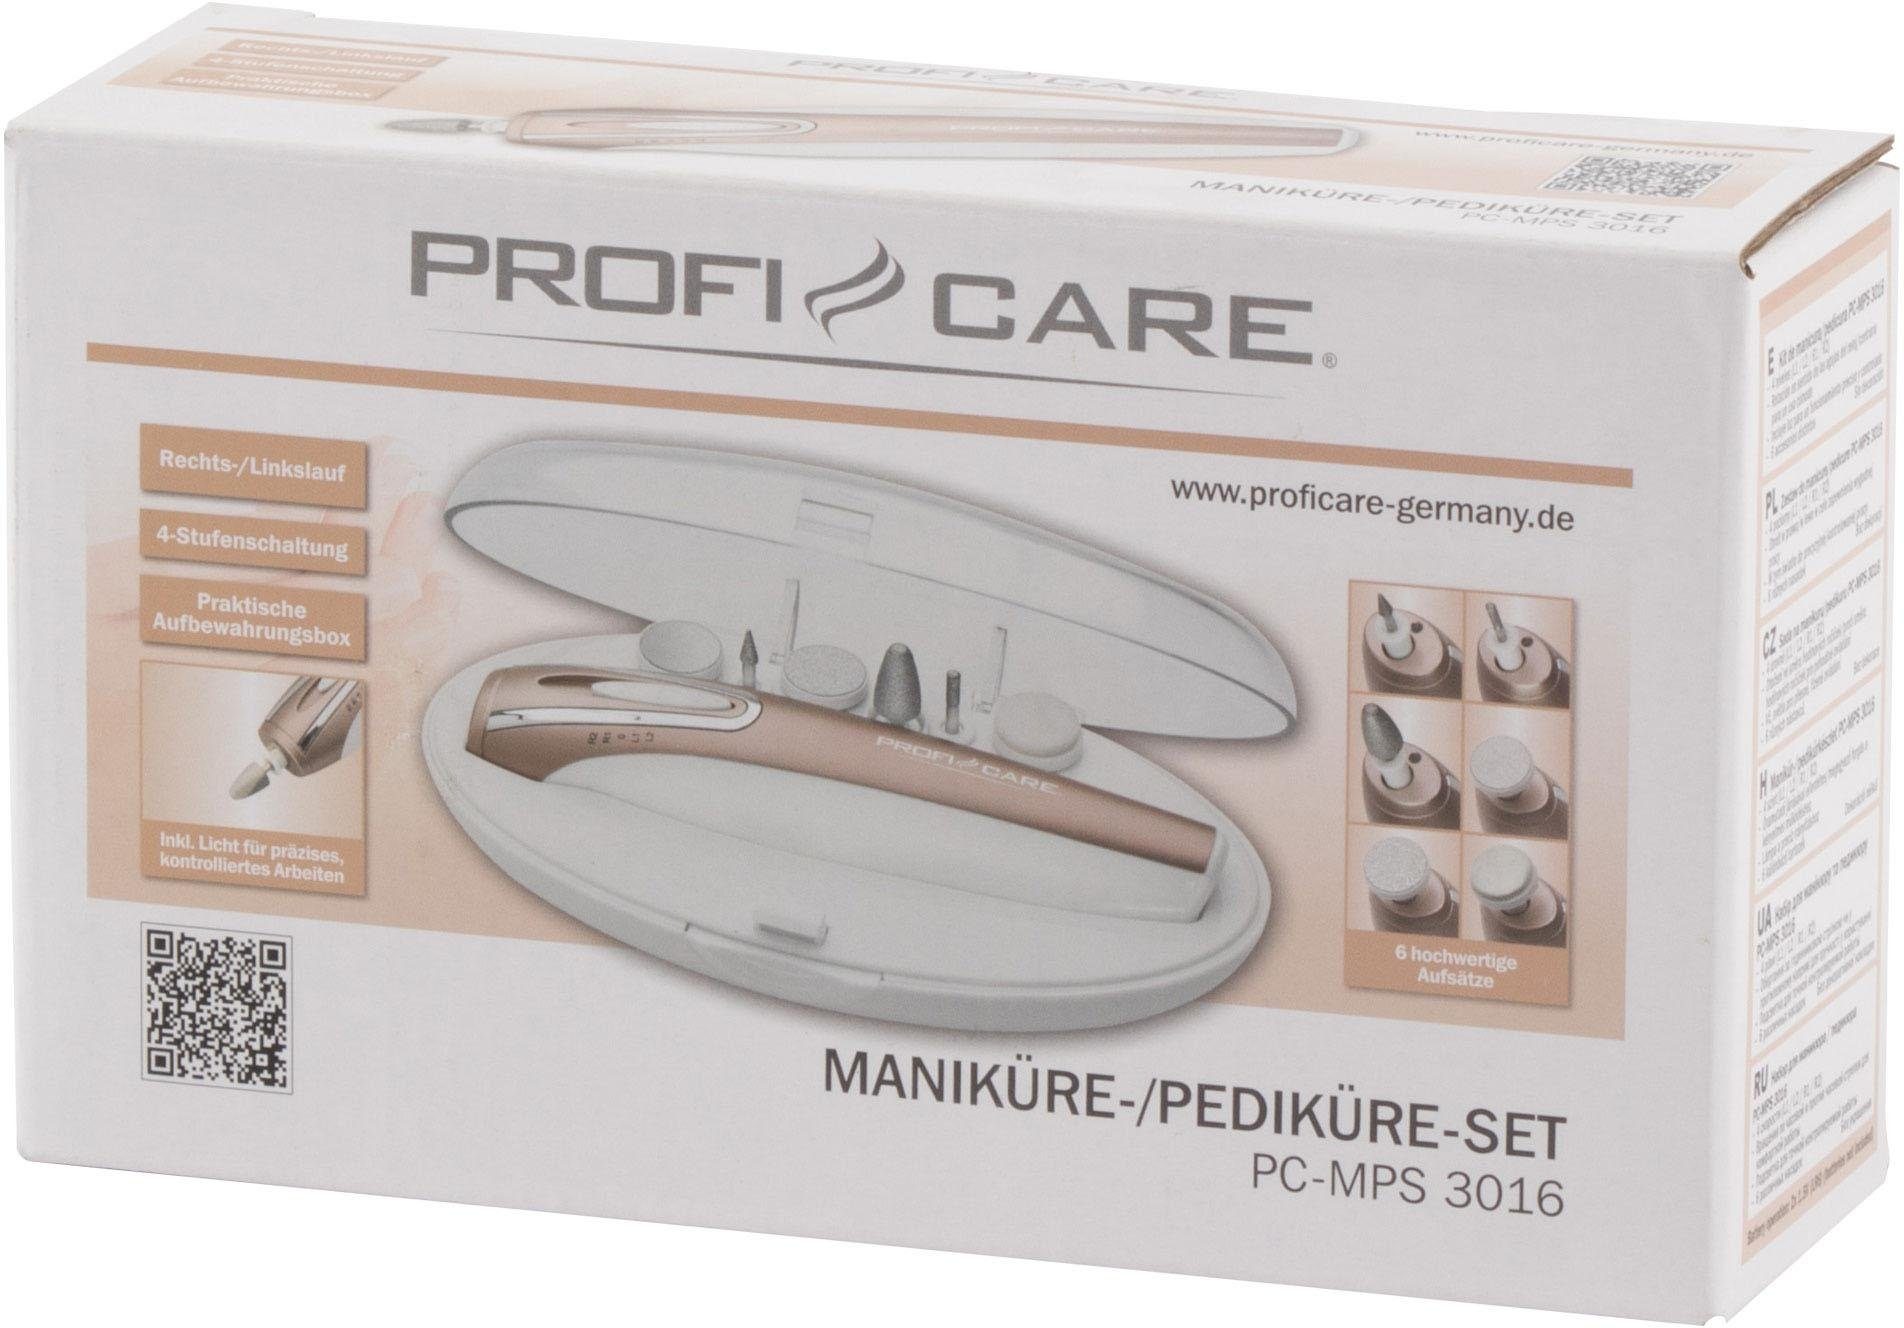 ProfiCare Maniküre-Pediküre-Set PC-MPS 3016